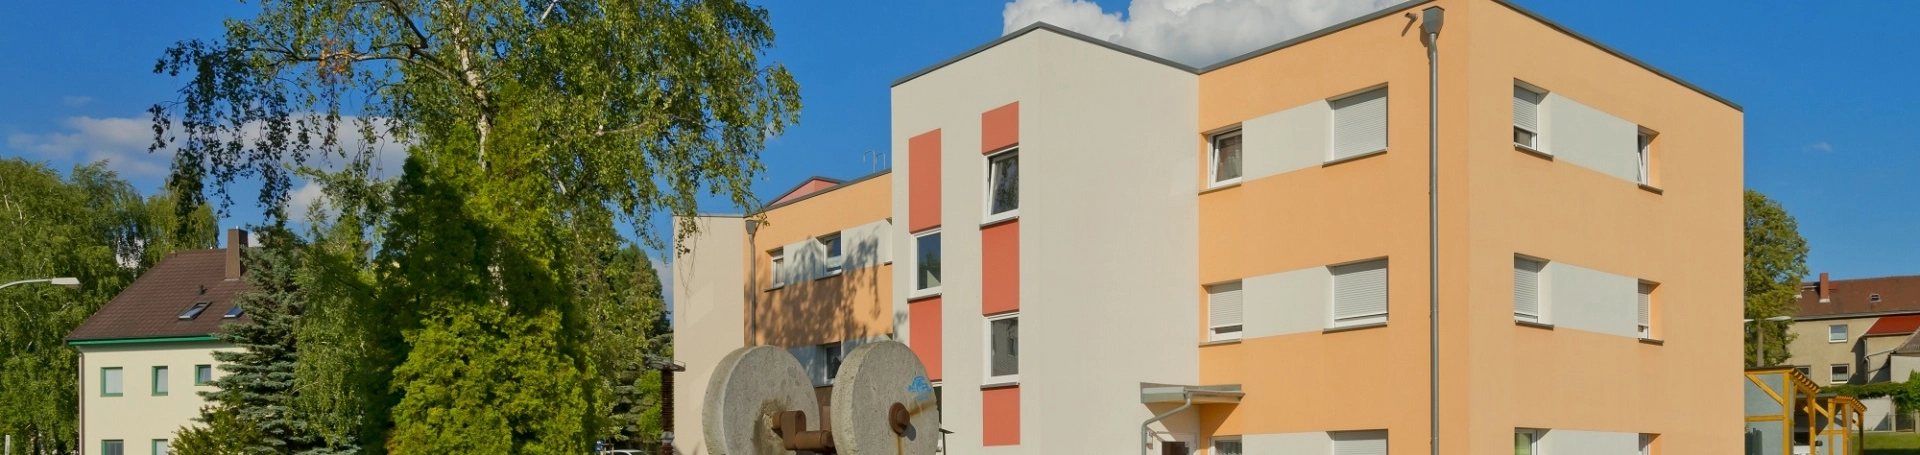 Wohnungen zur Miete in Hermsdorf